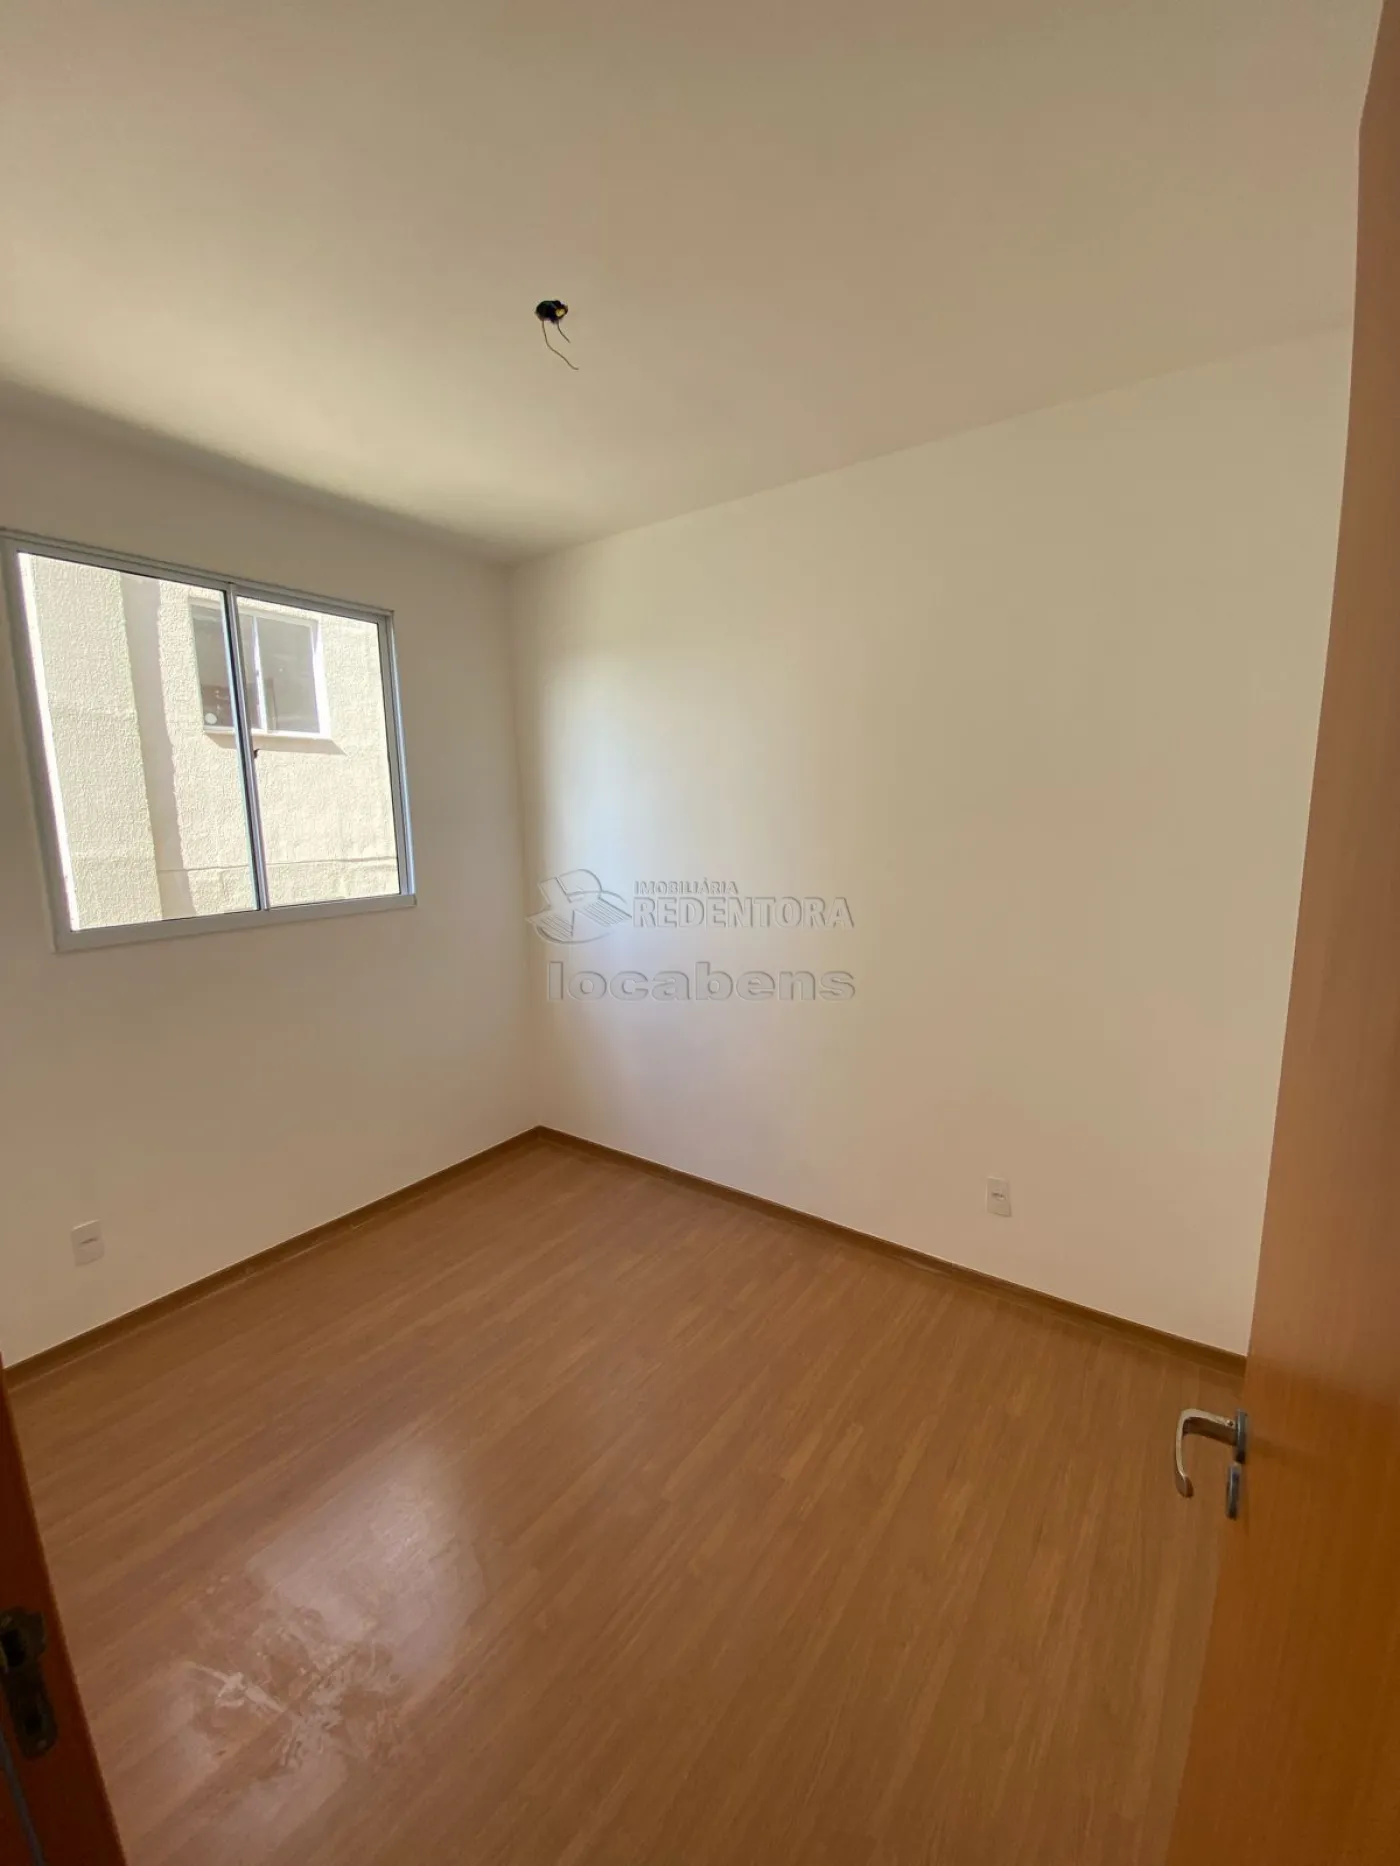 Comprar Apartamento / Padrão em São José do Rio Preto apenas R$ 220.000,00 - Foto 10